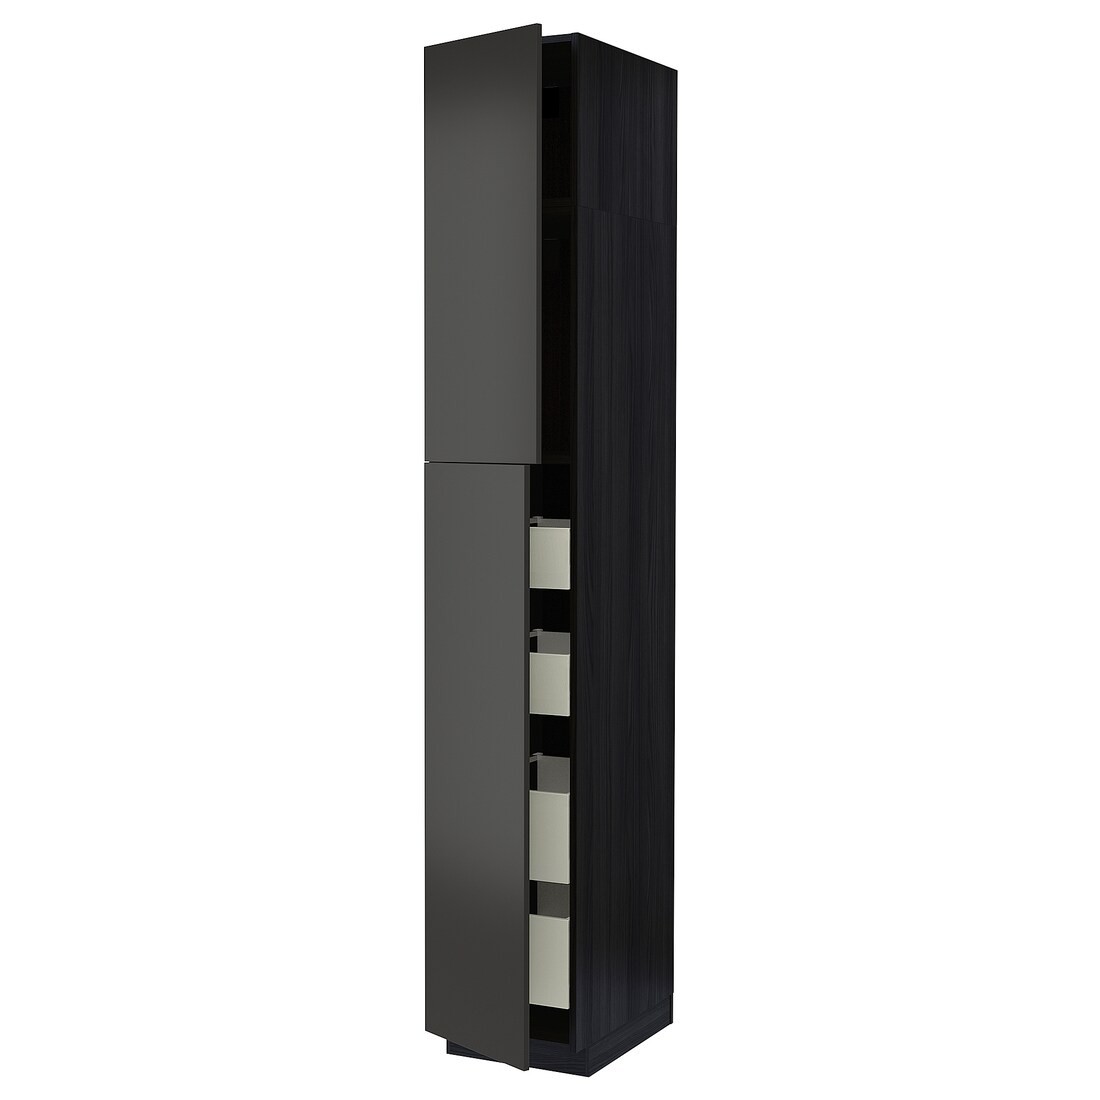 IKEA METOD МЕТОД / MAXIMERA МАКСИМЕРА Шкаф высокий 2 двери / 4 ящика, черный / Nickebo матовый антрацит, 40x60x240 см 39498193 | 394.981.93